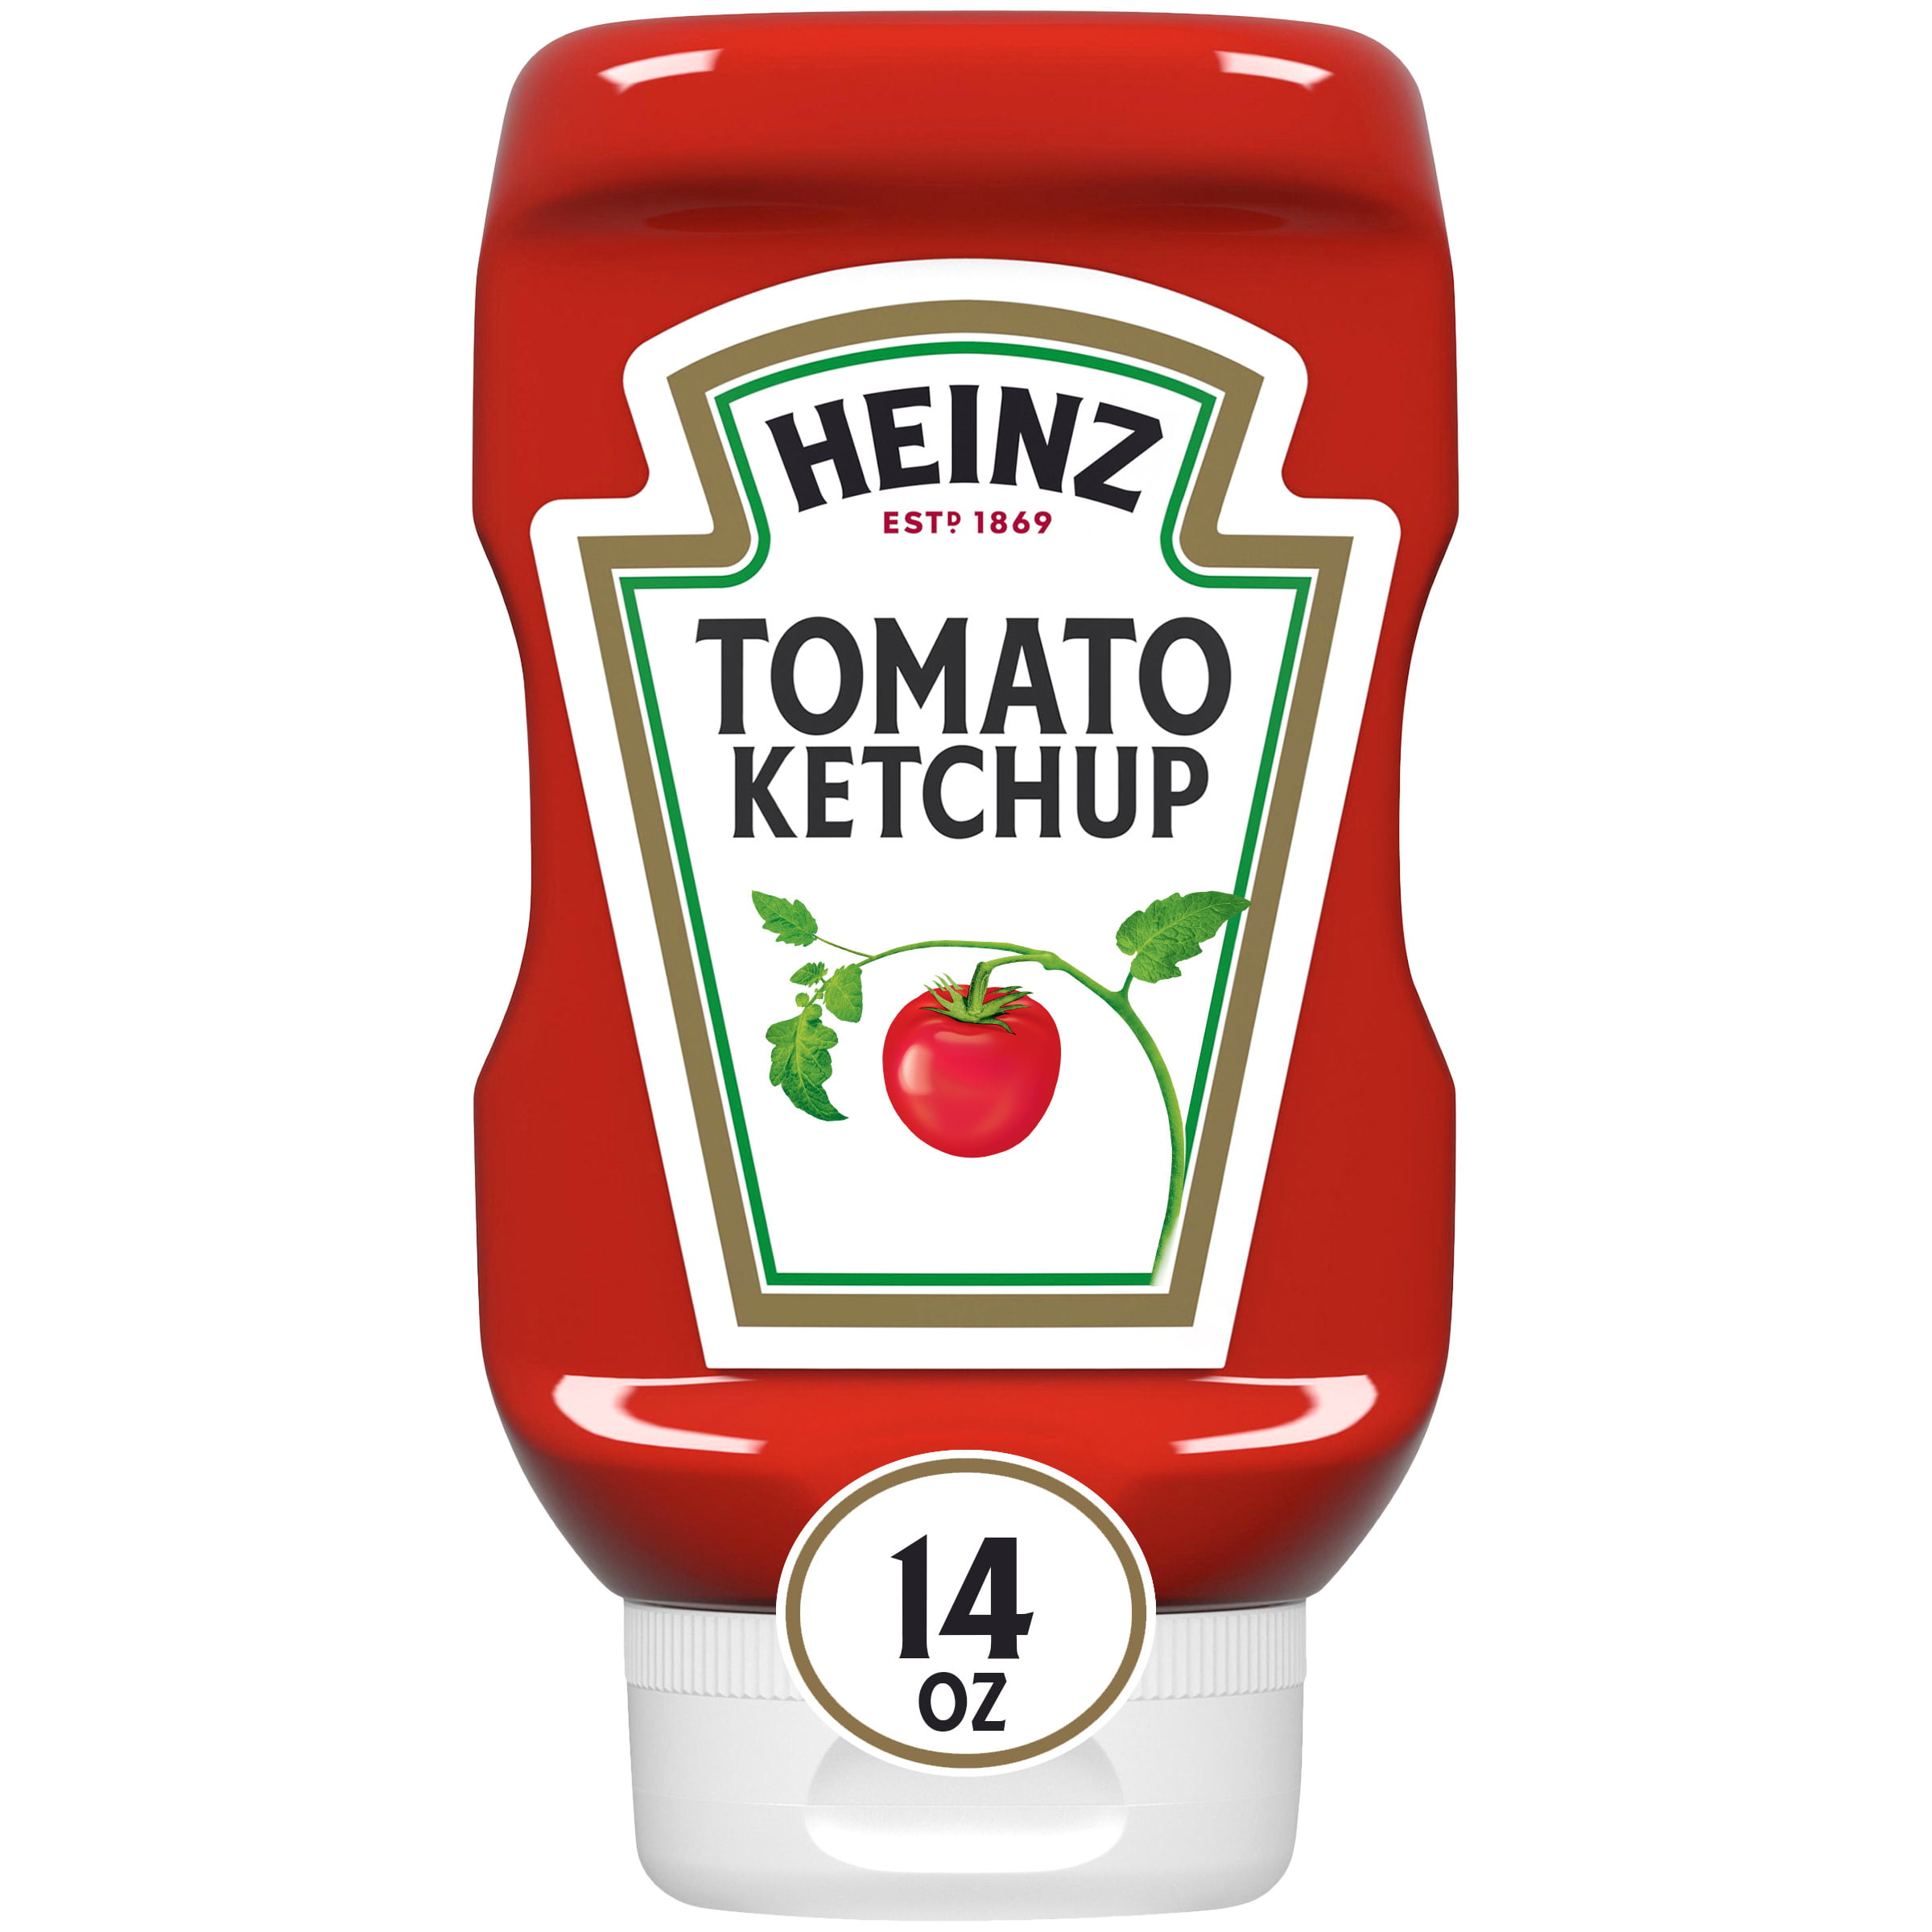 printable-ketchup-label-printable-world-holiday